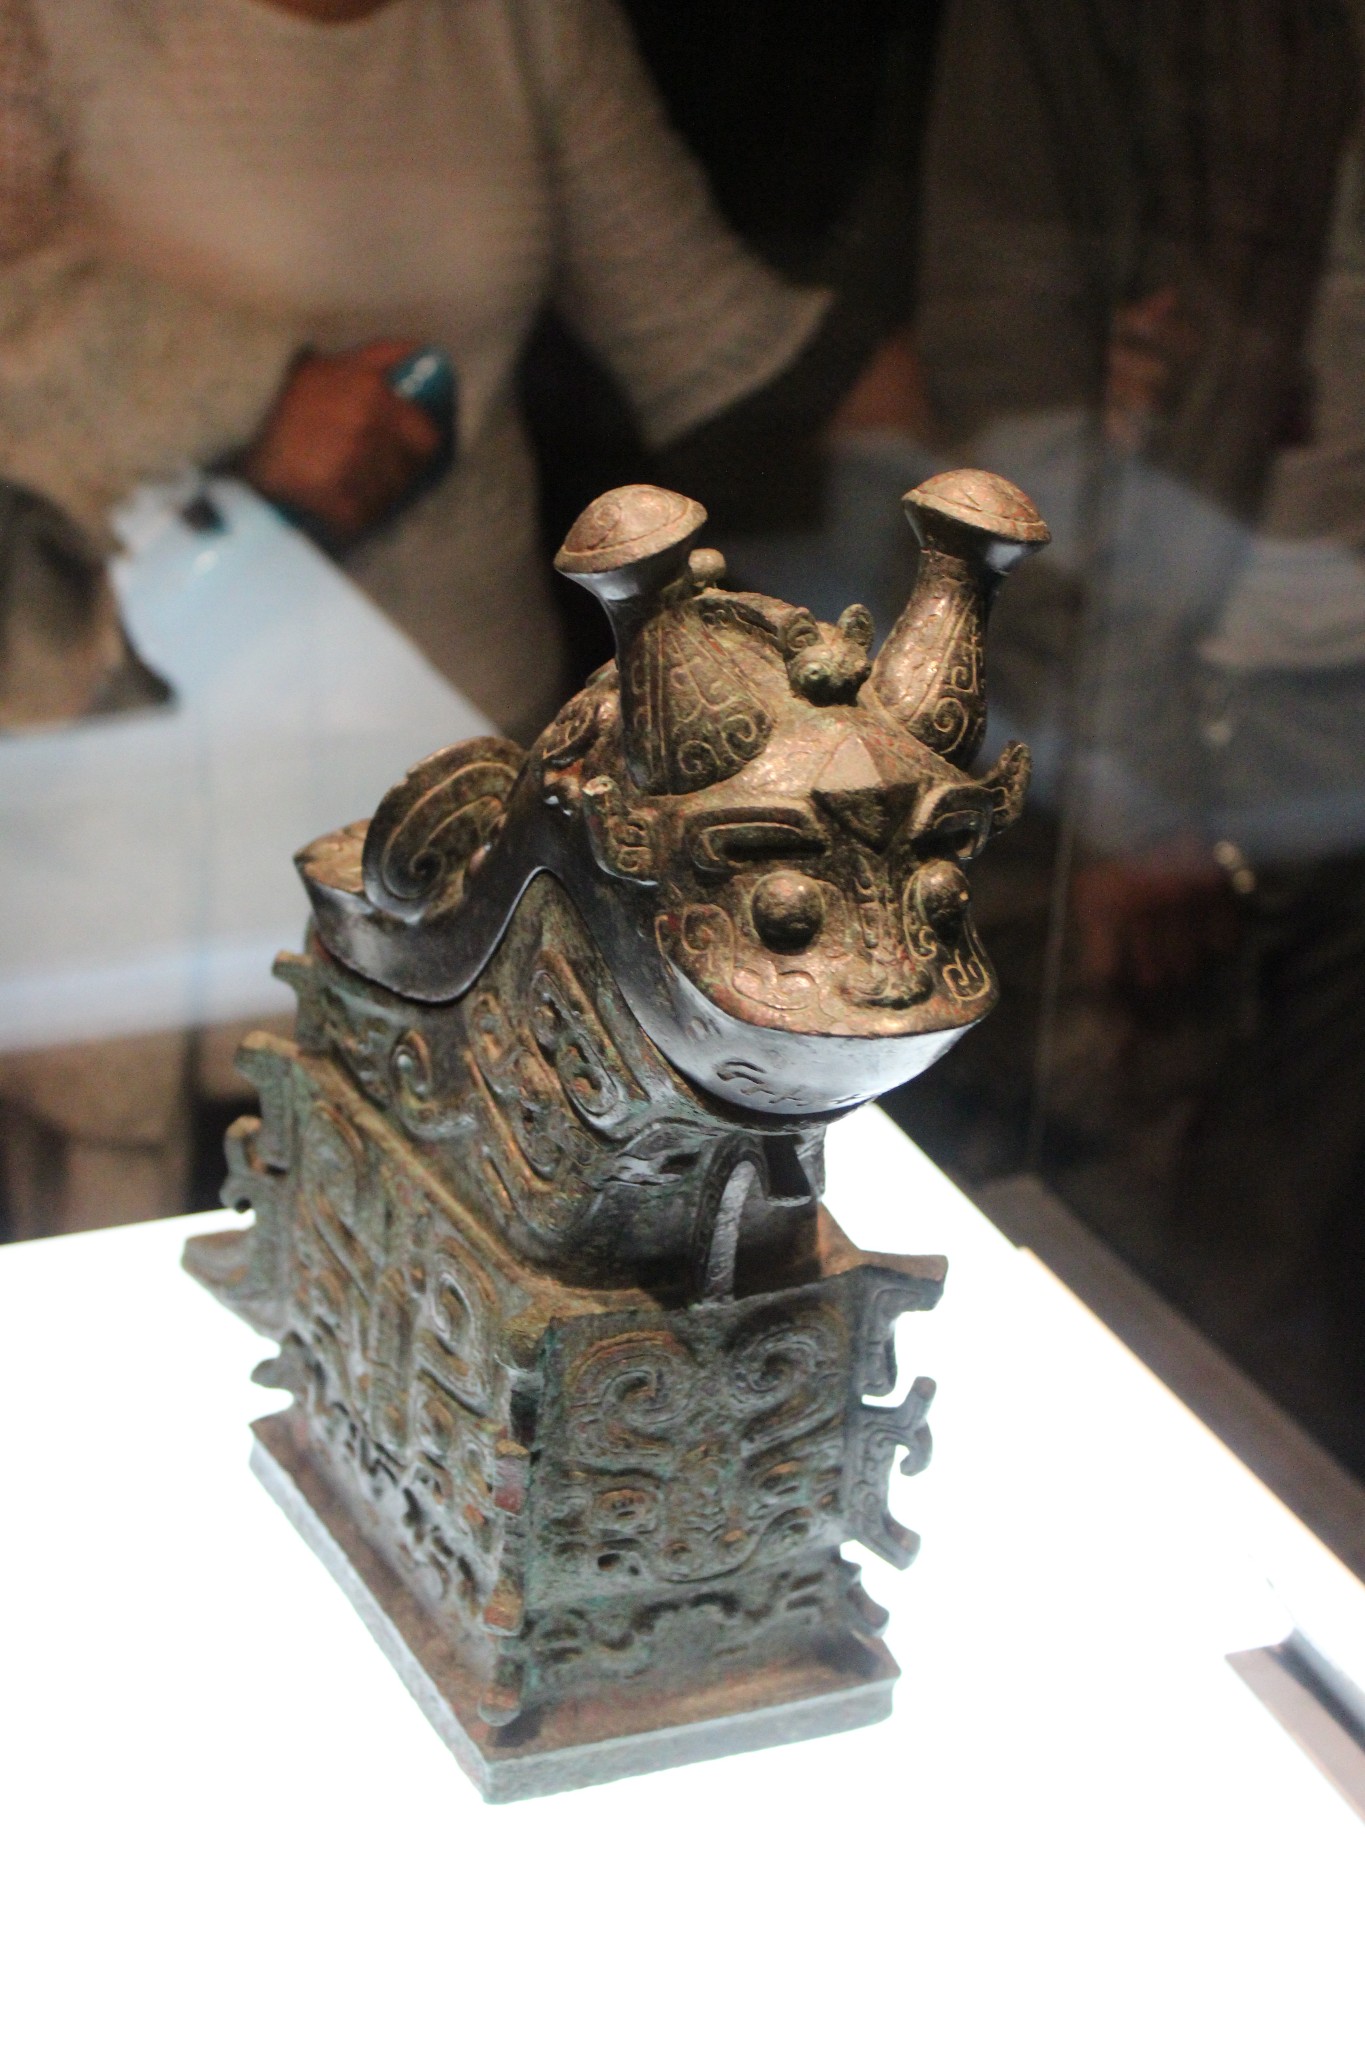 陕西历史博物馆镇馆之宝之一,1974年出土于陕西省西安市临潼区姜寨